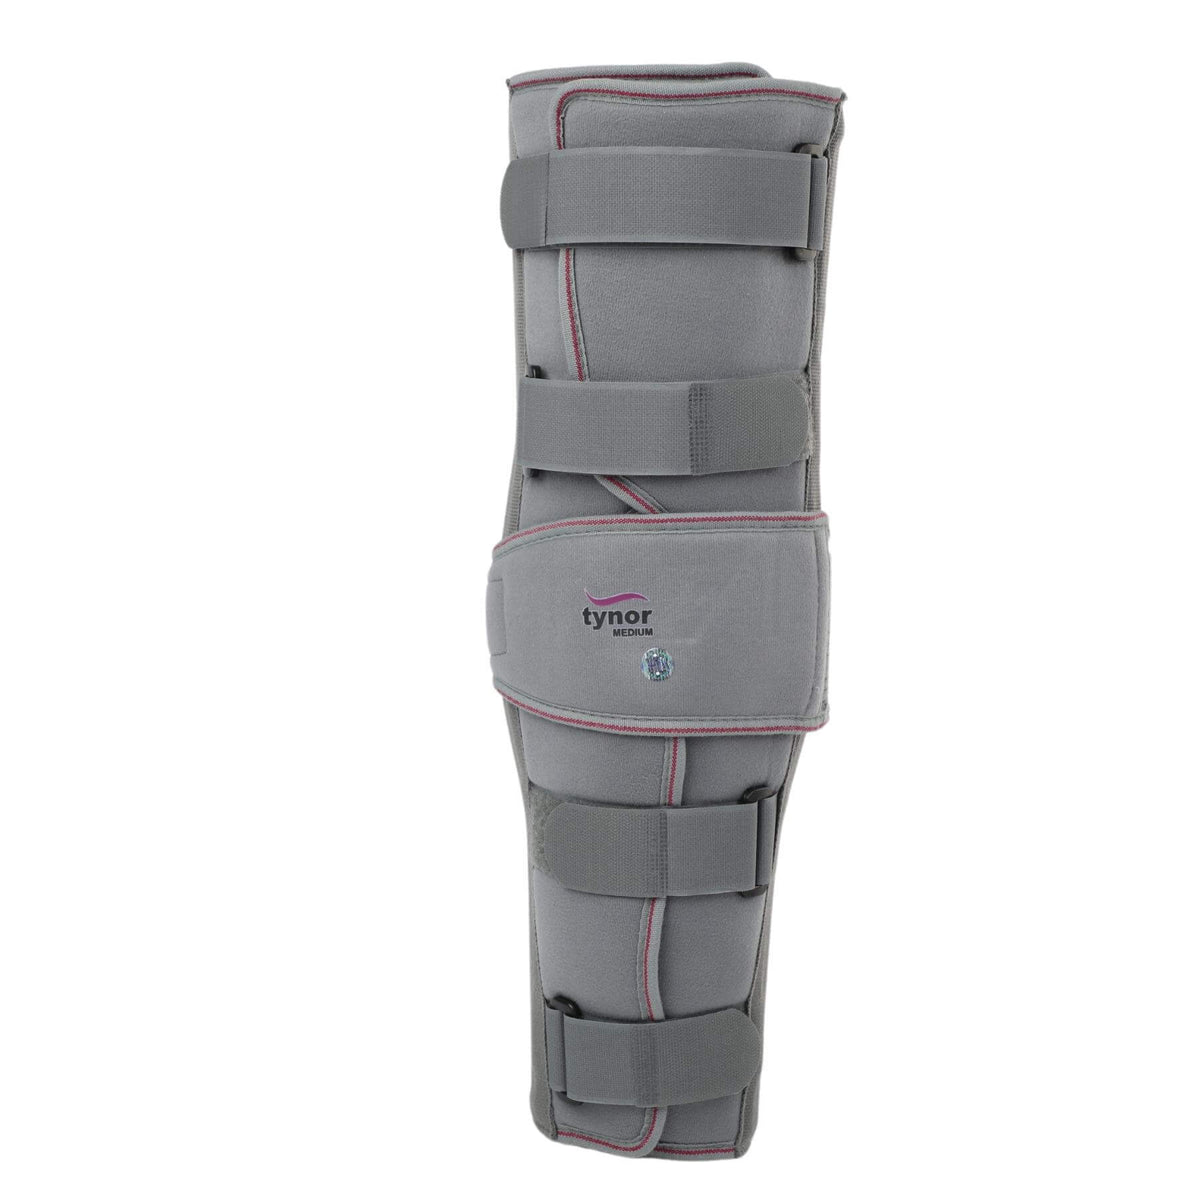 Premium Knee Immobiliser 48cm long to immobilise the knee or leg-7